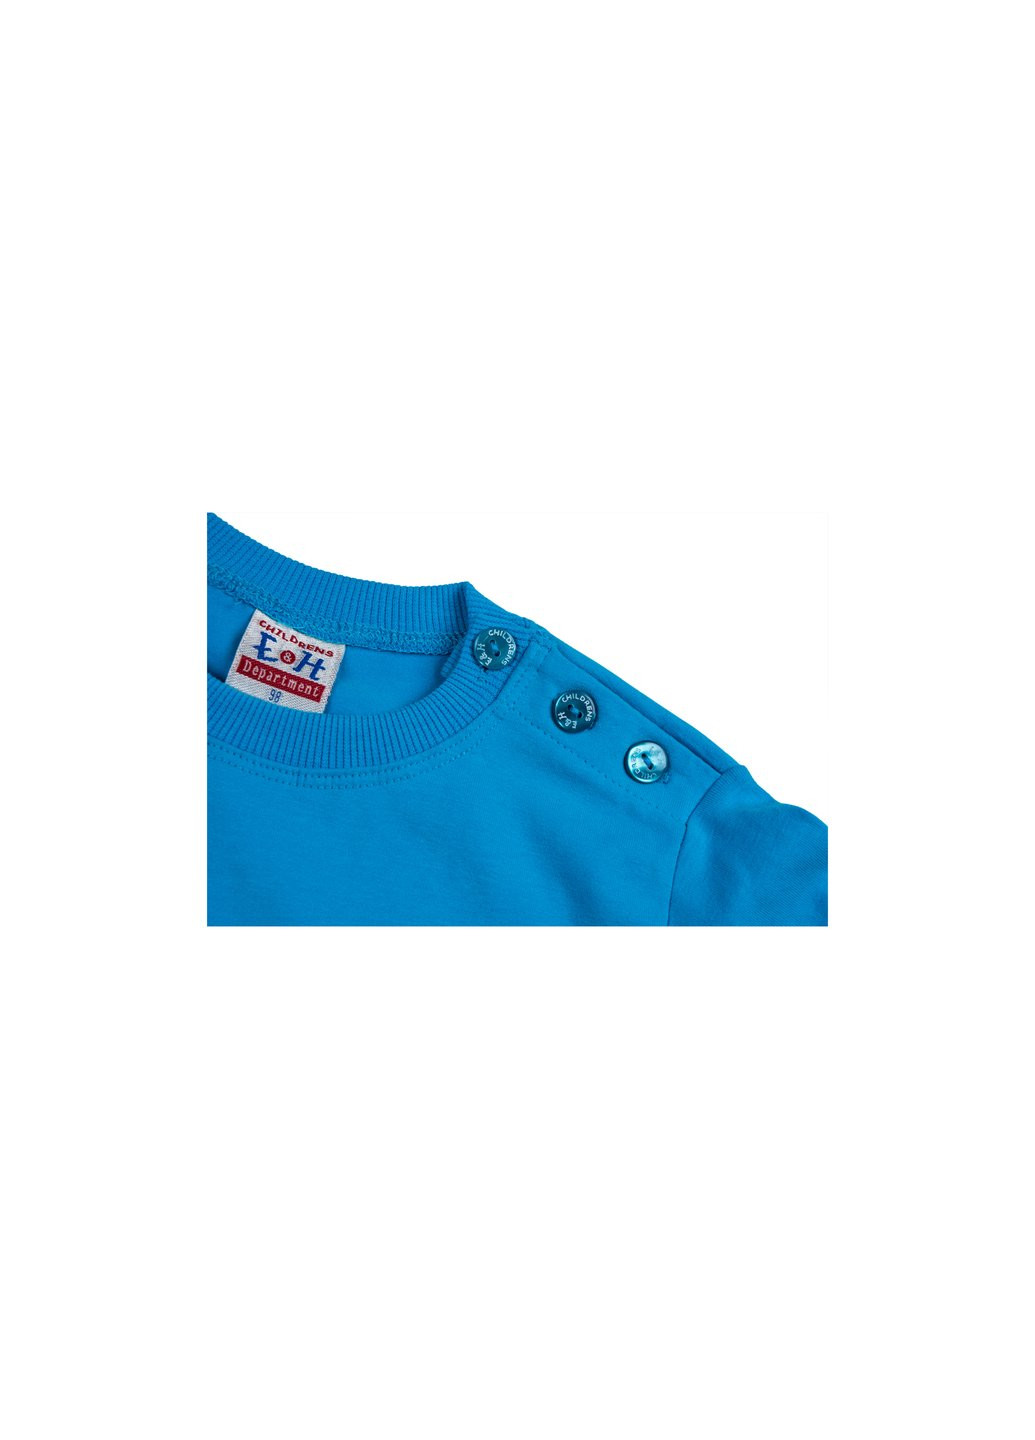 Голубой демисезонный набор детской одежды кофта и брюки голубой " brooklyn" (7882-74b-blue) Breeze